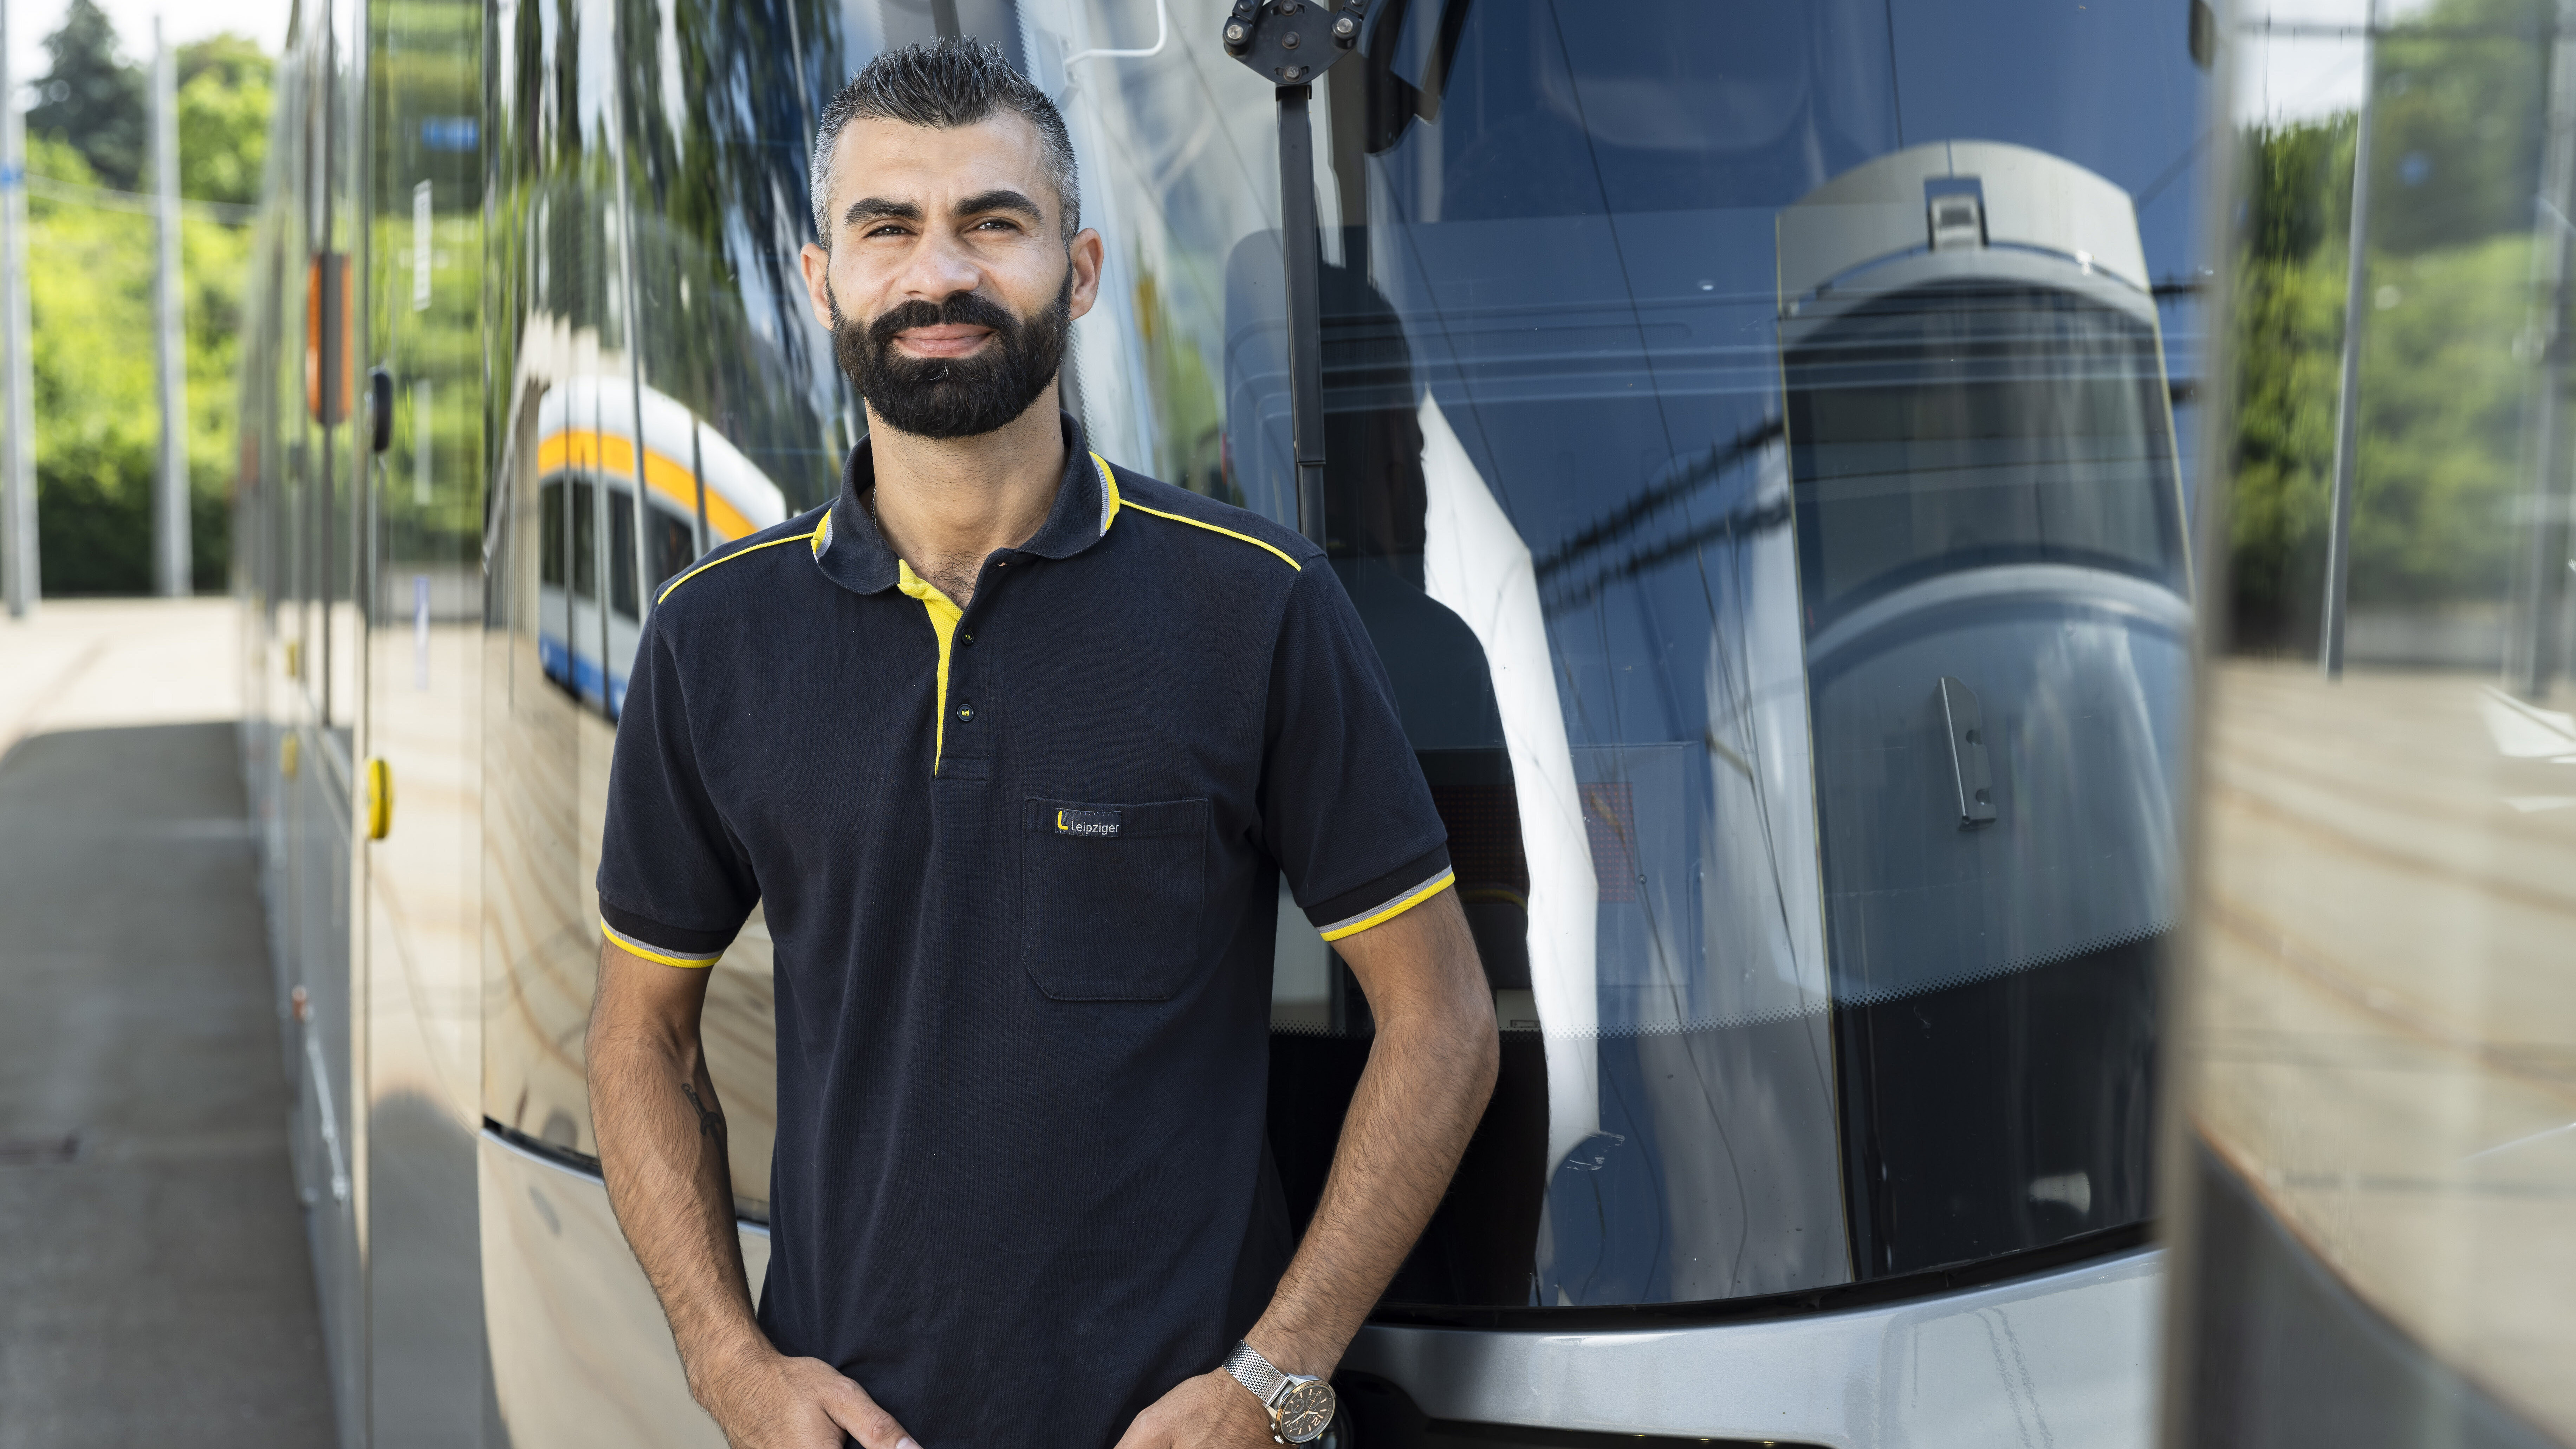 Nazar Arab steht vor einer Straßenbahn. Er hat schwarze, kurze Haare, hat die Hände in den Taschen und trägt ein dunkelblaues T-Shirt der Leipziger Gruppe.